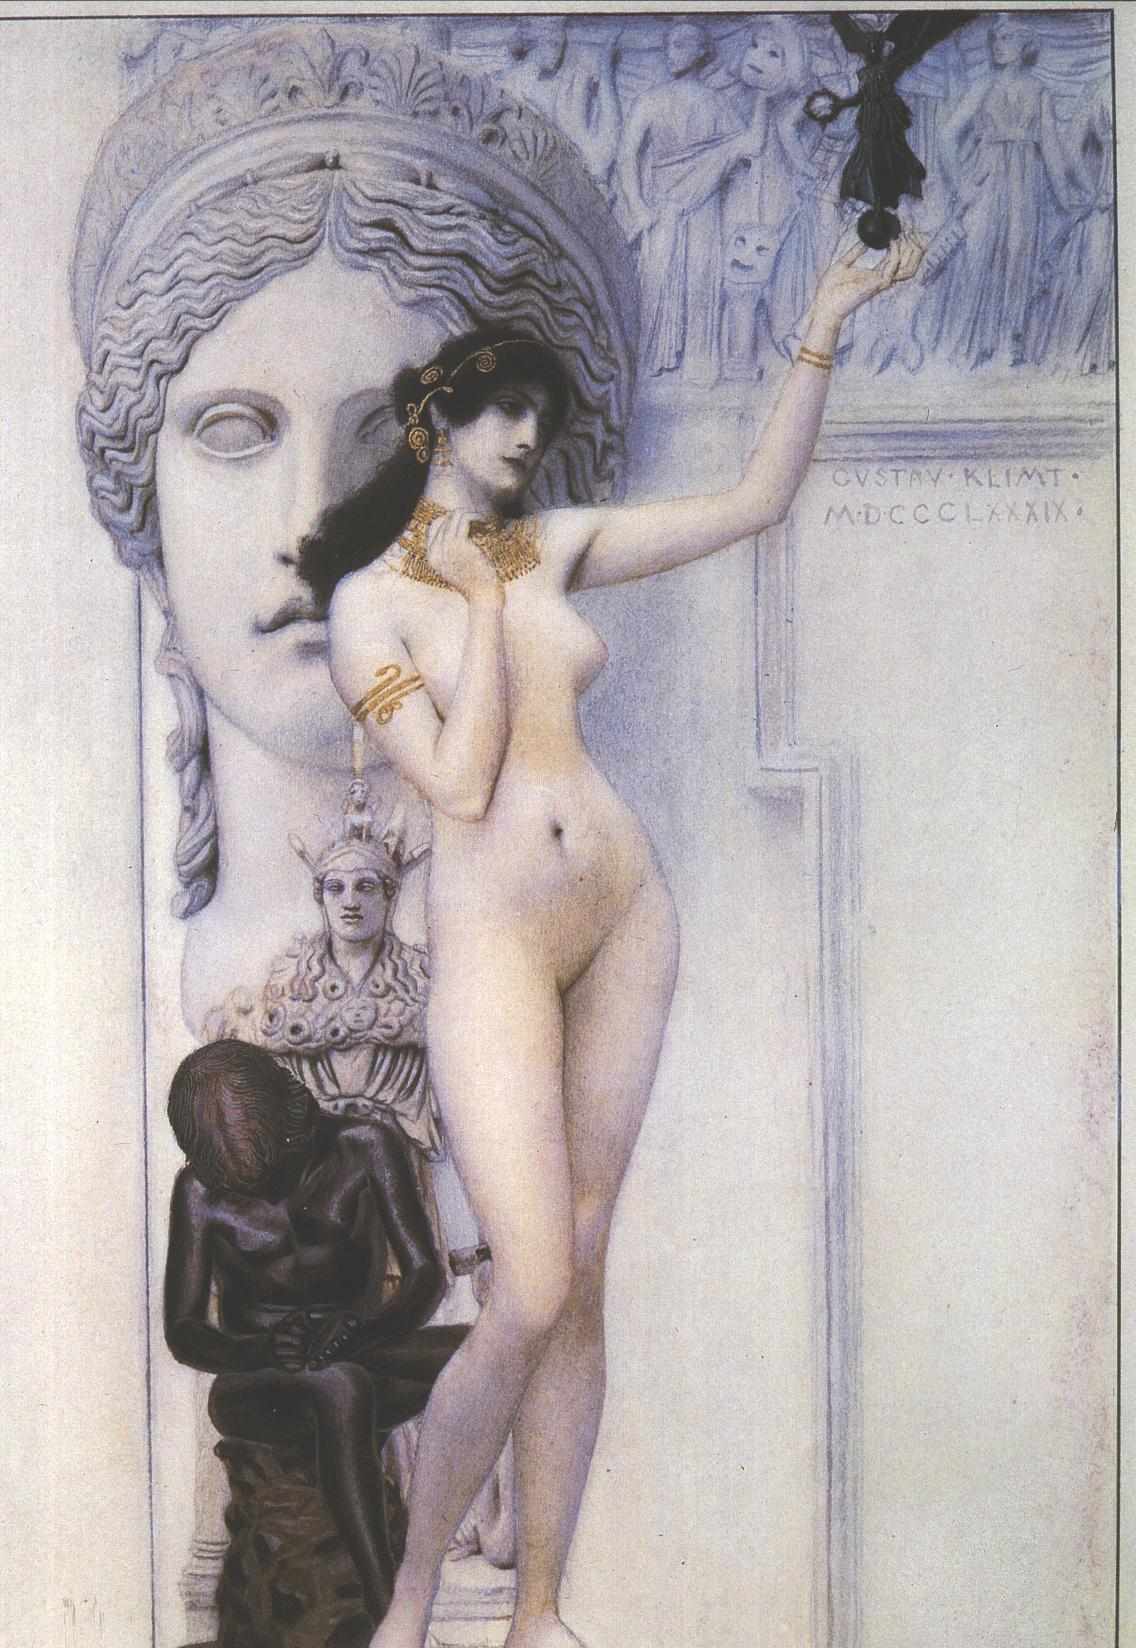 حكاية النحت by غوستاف كليمت - 1889م - 43.5 x 30 